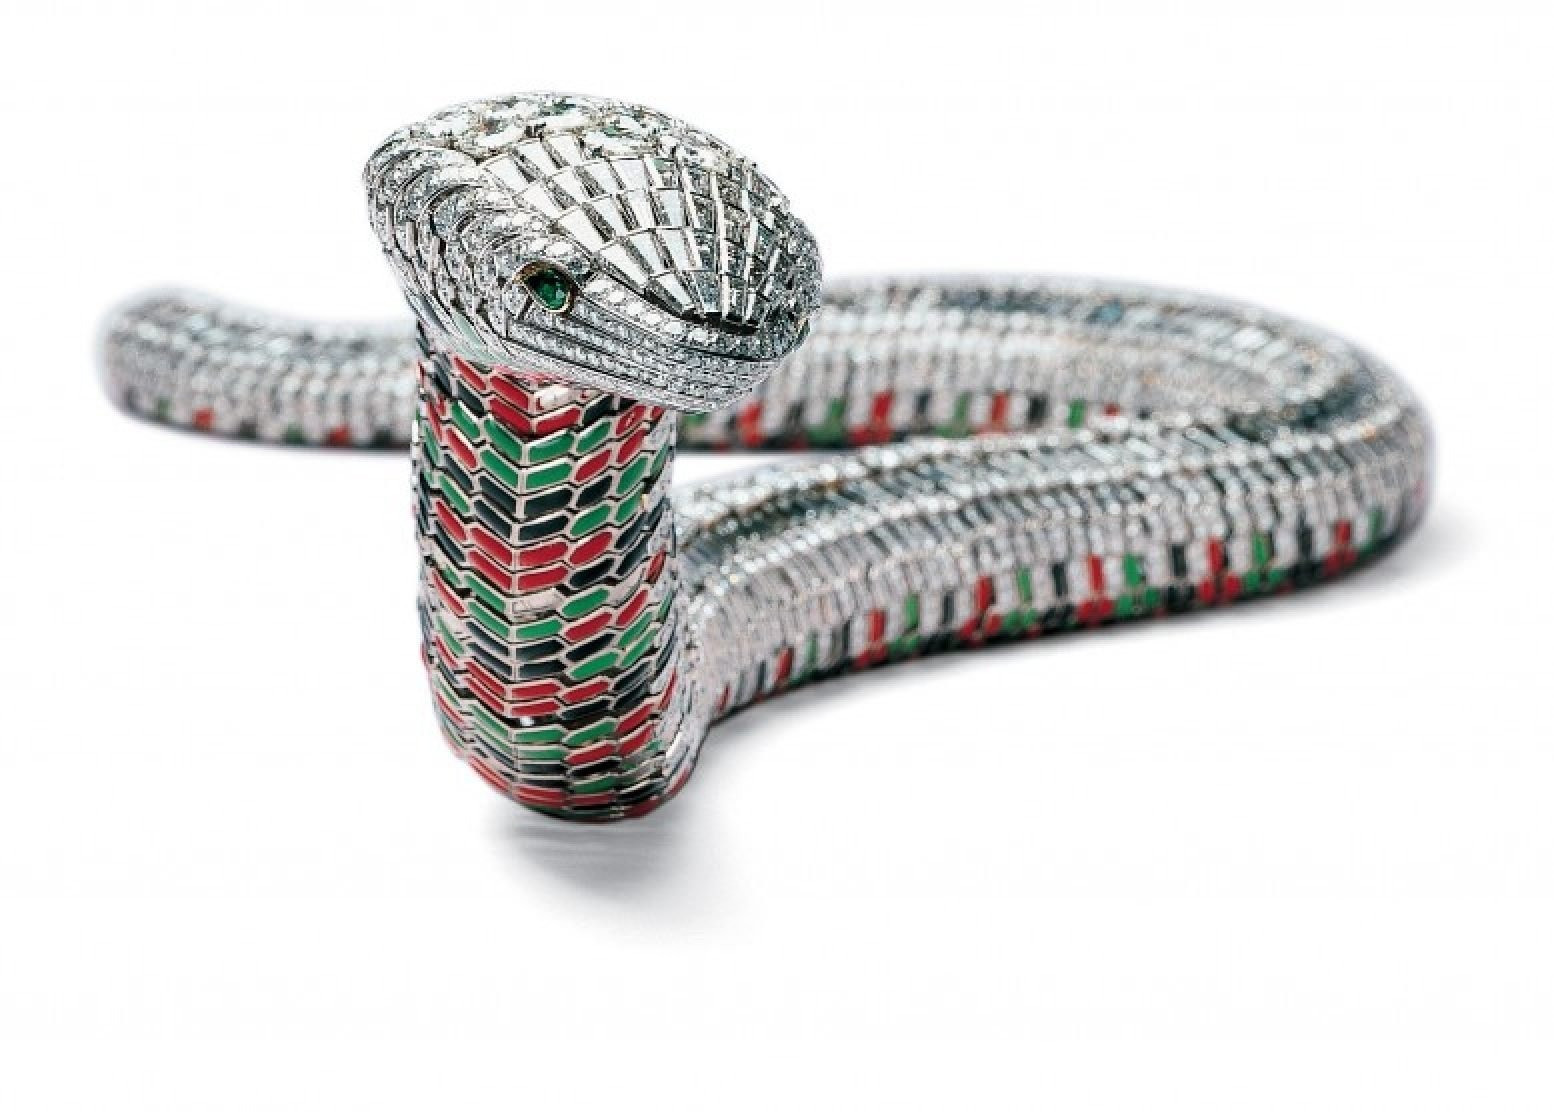 Lý do loài rắn xuất hiện trên những món đồ trang sức xa xỉ - Ảnh 3.